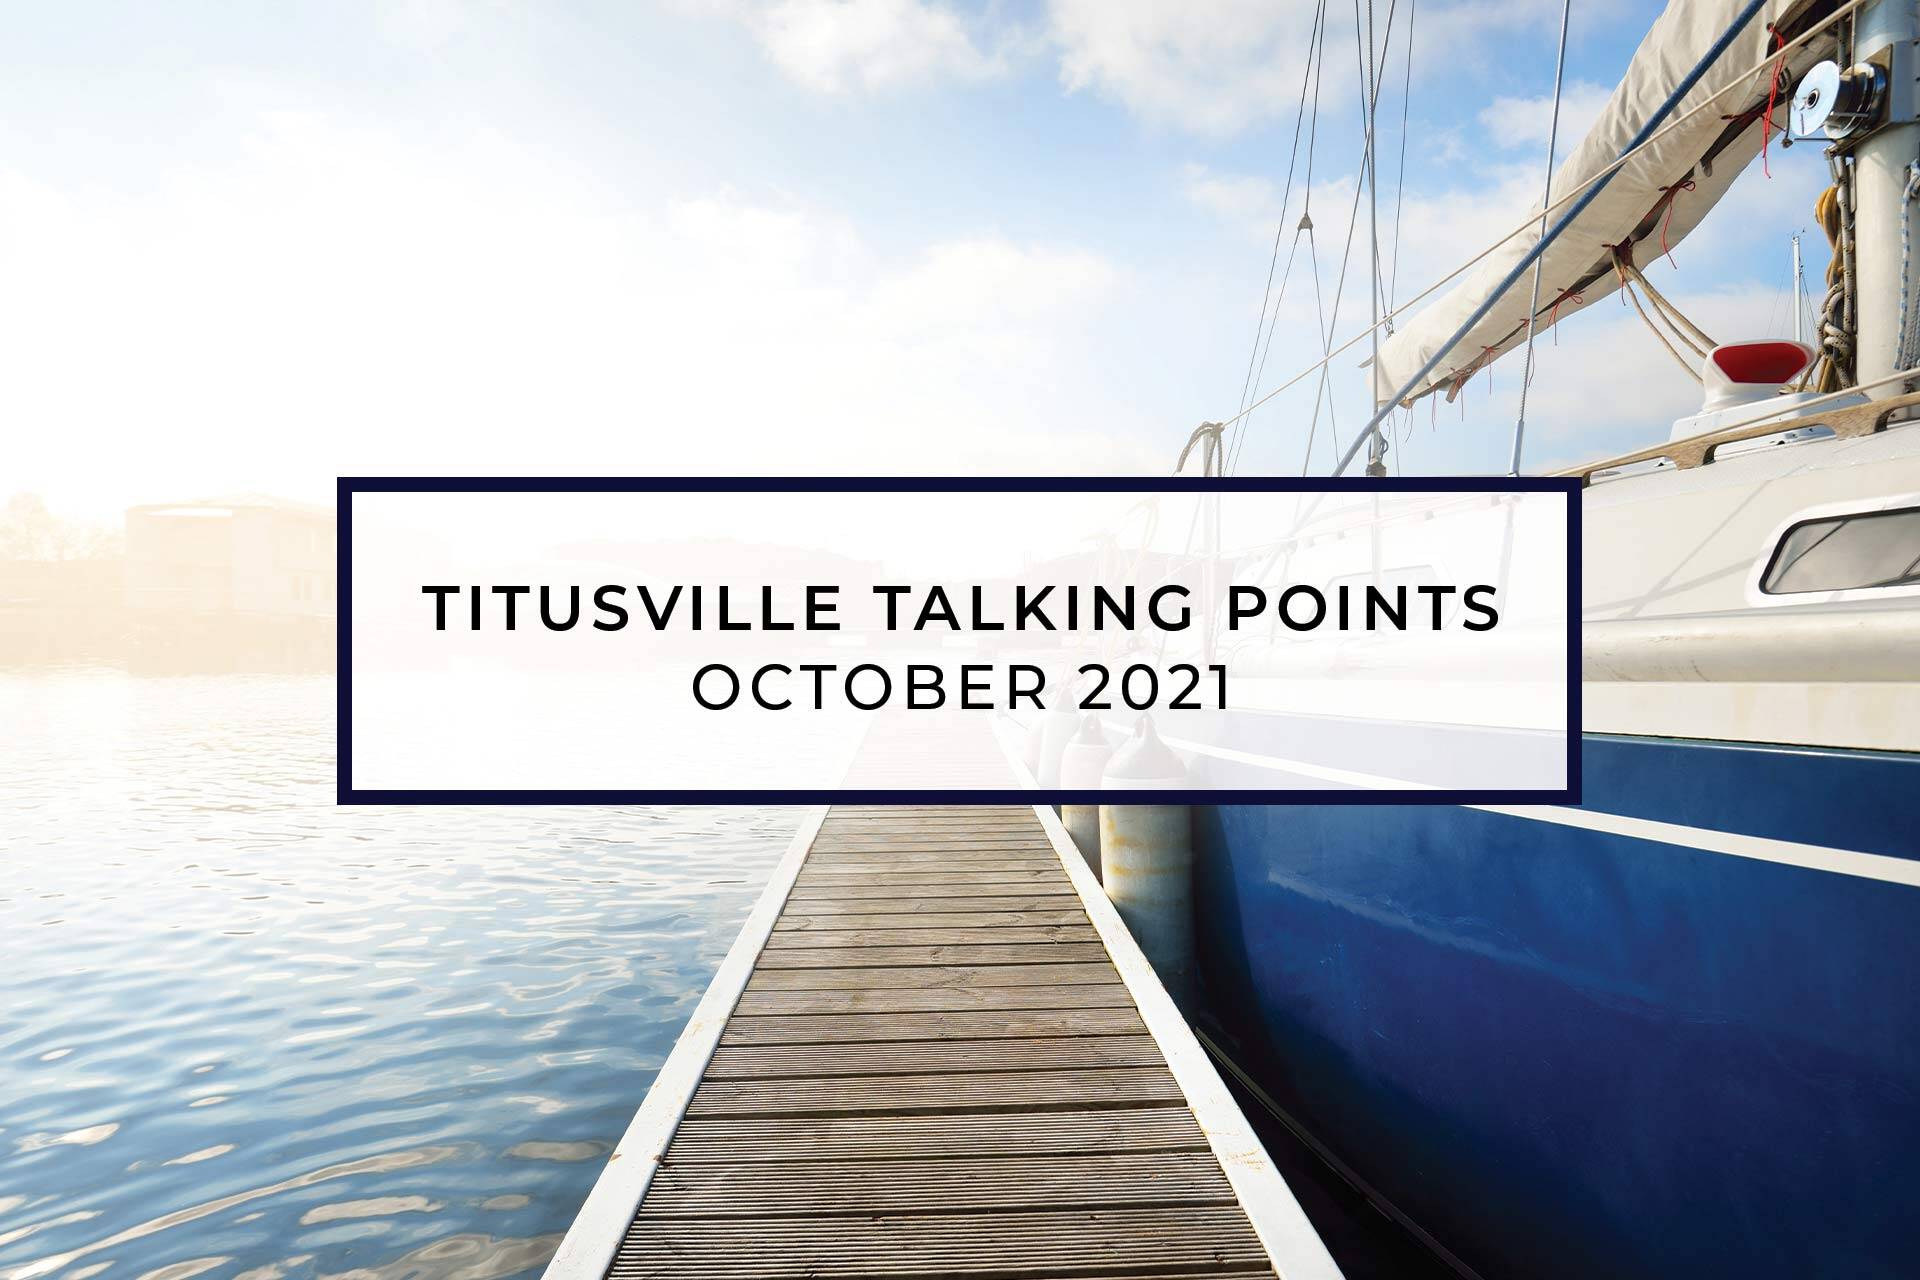 Titusville Talking Points